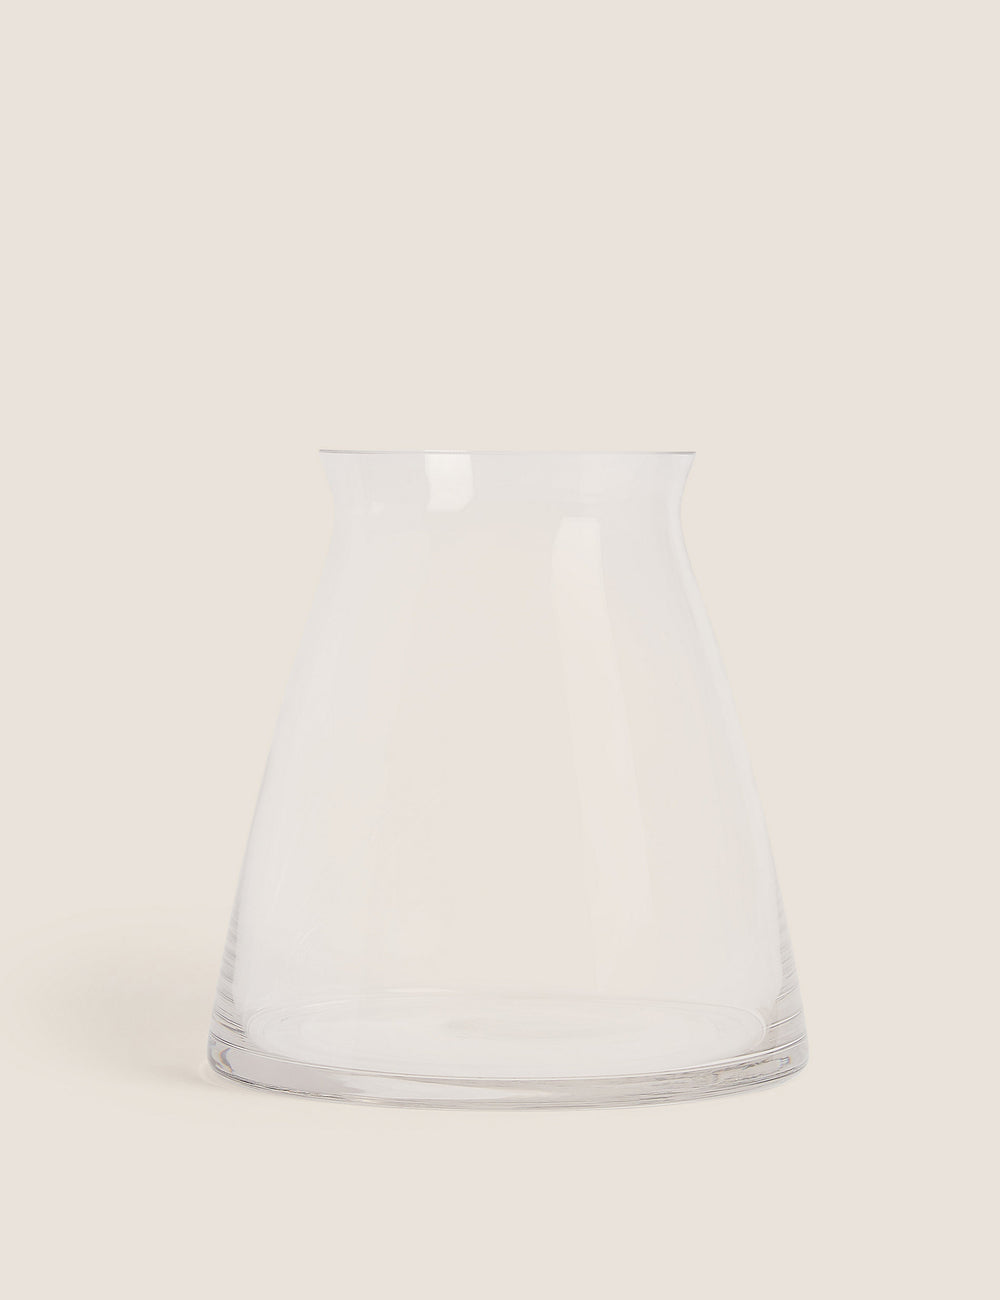 Skleněná váza střední velikosti Lucerna